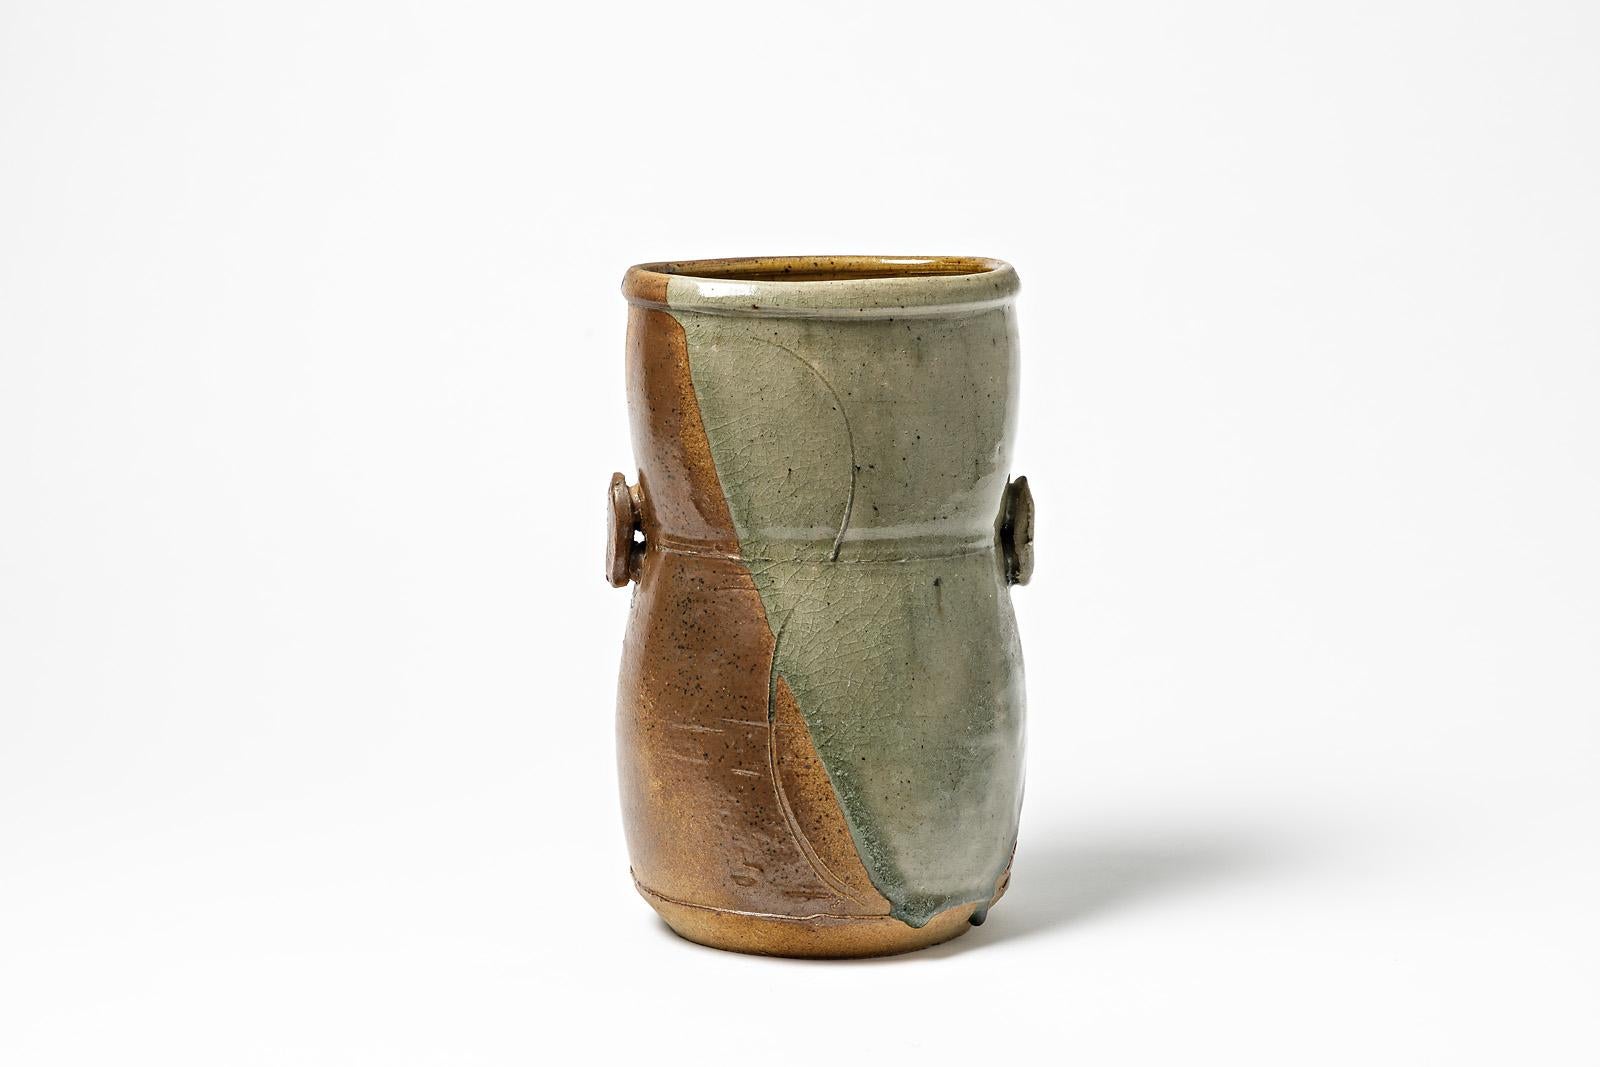 Modern Stoneware Ceramic Vase by Astoul in La Borne 1982 Shinny Grey Color For Sale 4